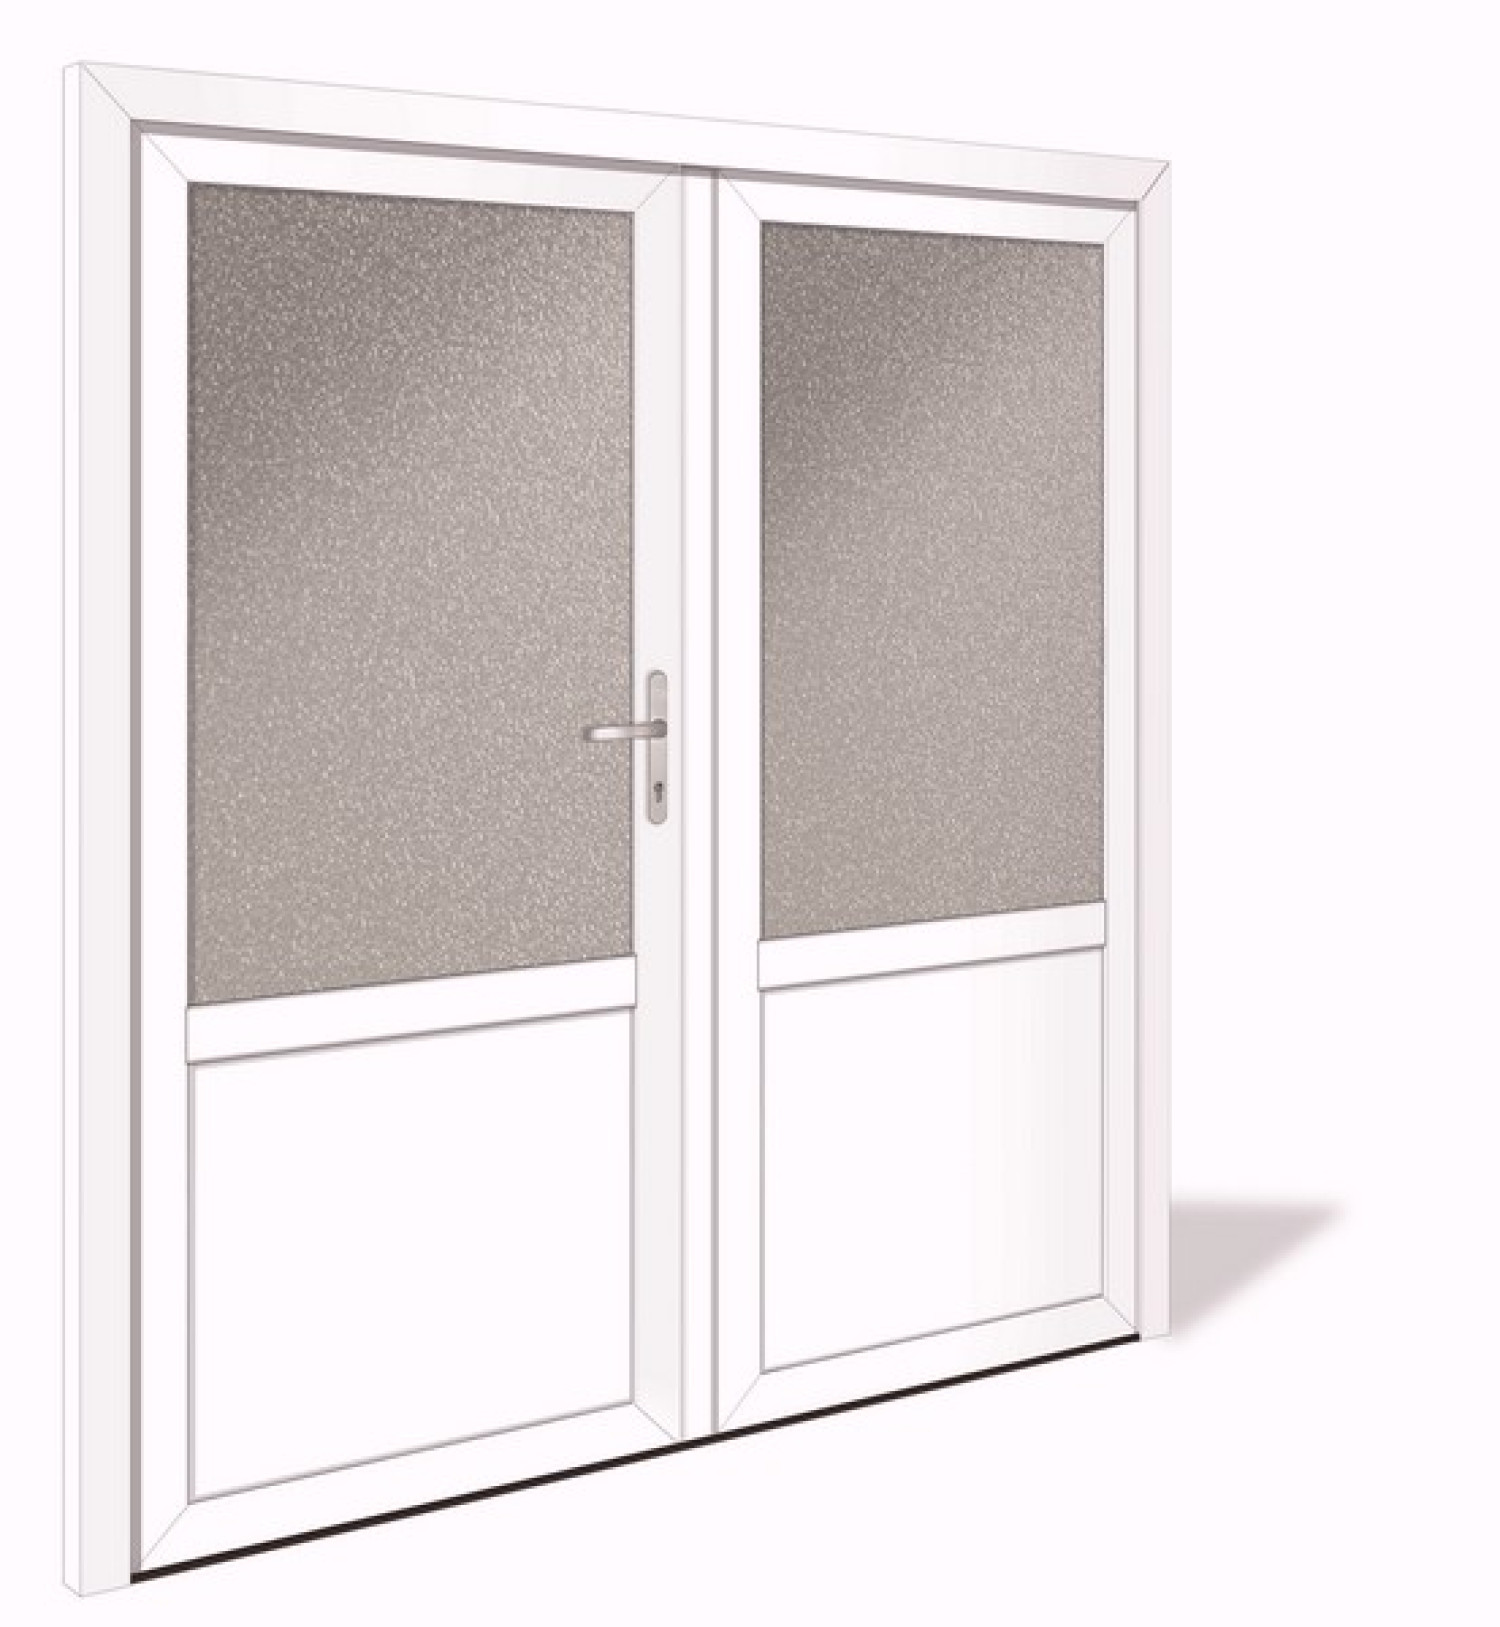 NET 1041-2 Aluminium Doppelflügel Nebeneingangstür mit Glasausschnitt - Interio